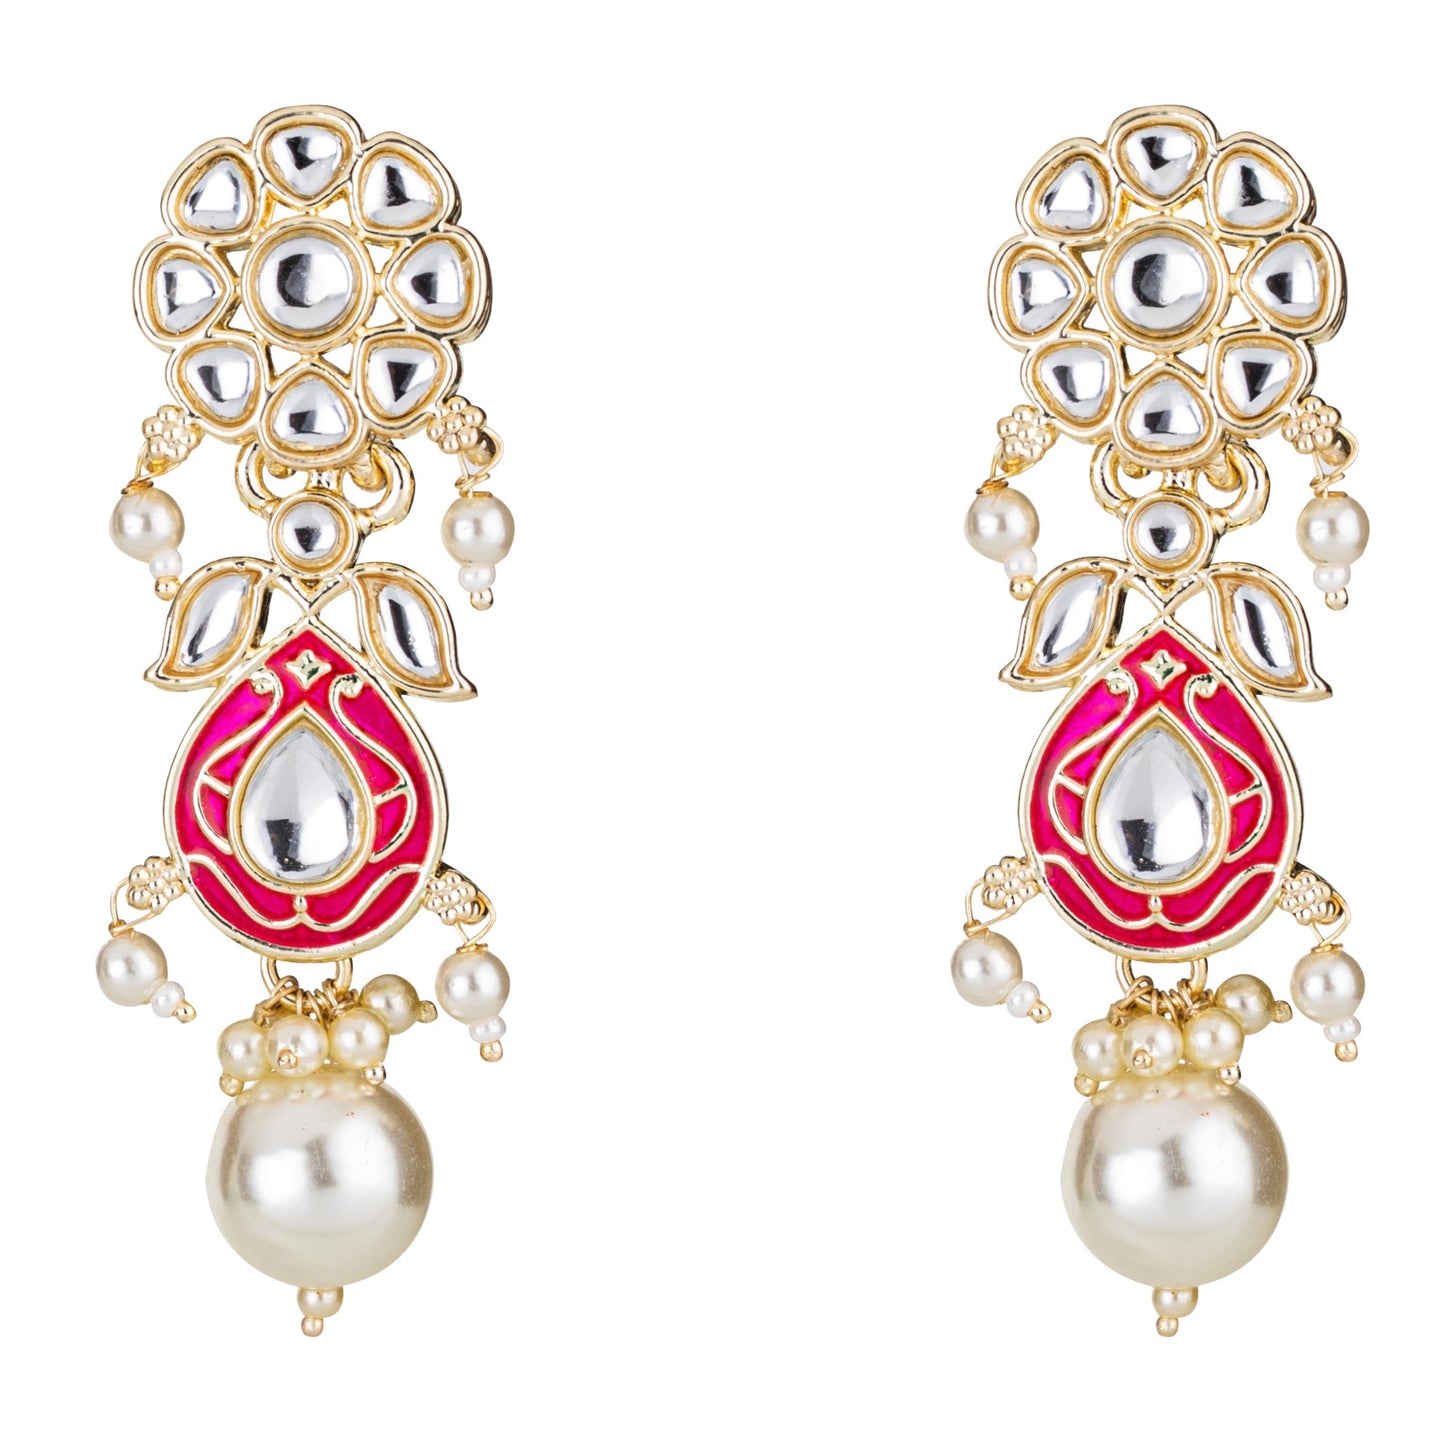 Bdiva 18K Gold Plated Red Kundan Meenakari Drop Earrings with Semi Cultured Pearls.